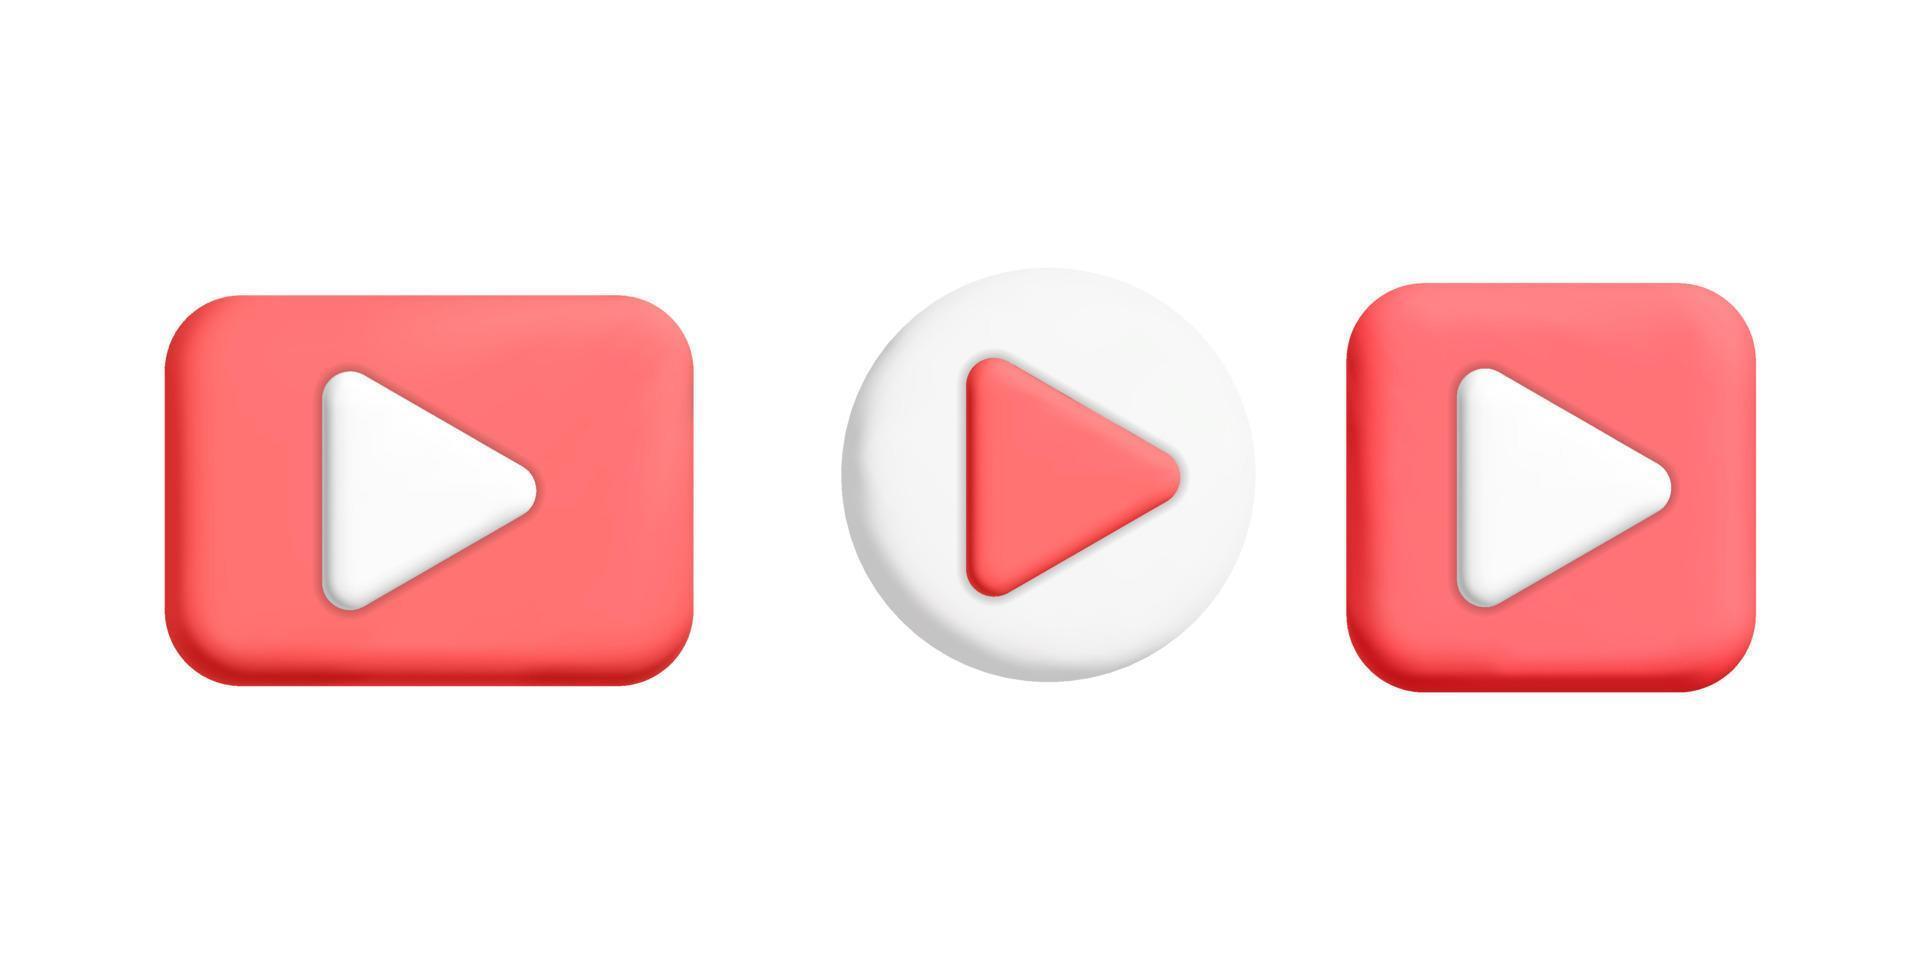 conjunto de estilo minimalista vetor 3d vermelho e branco redondo, quadrado e retângulo ícones de botão de reprodução para web e design de elementos de interface do usuário do aplicativo